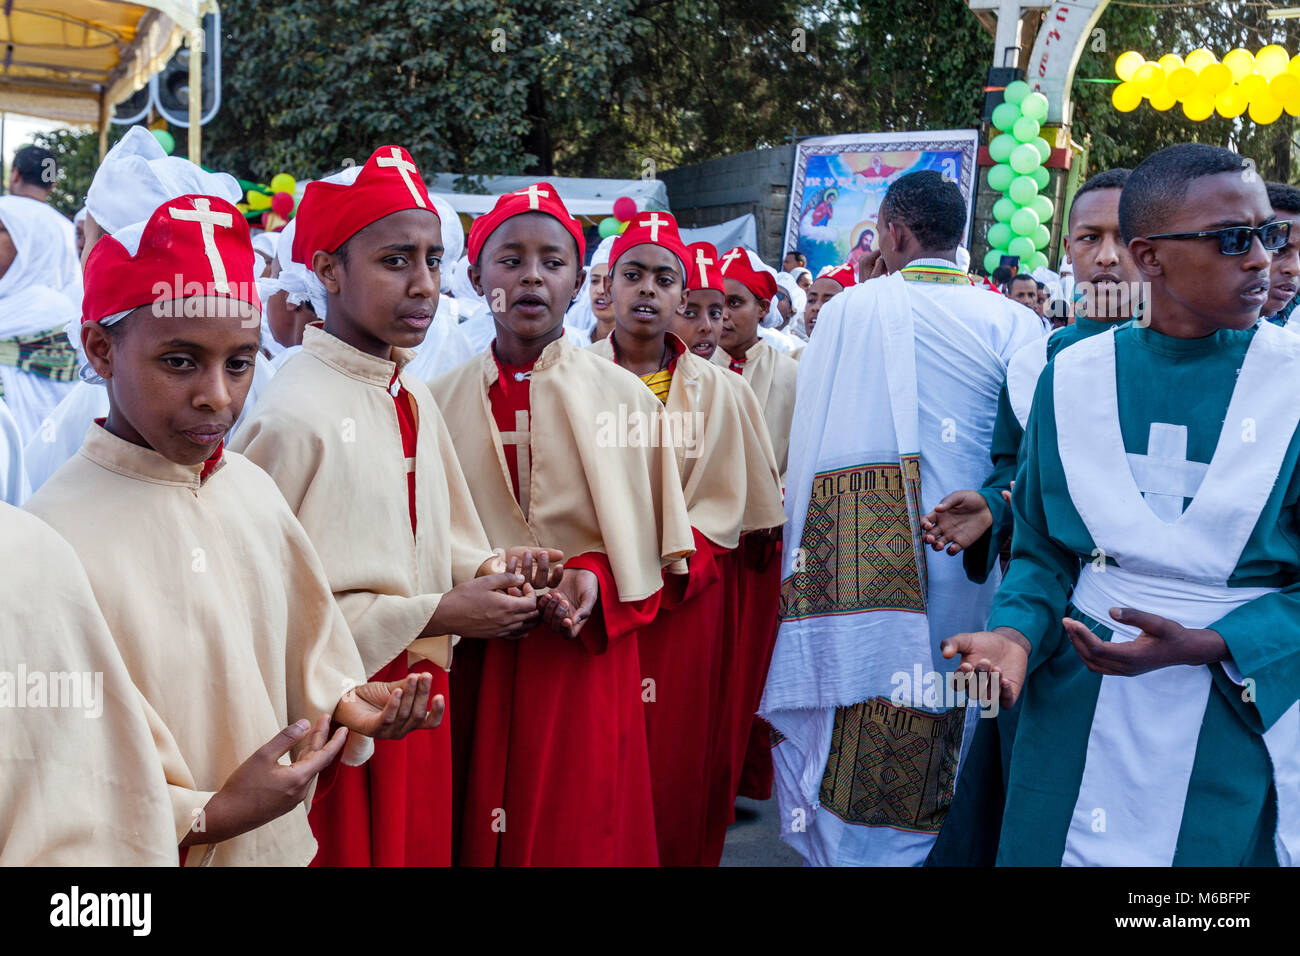 Orthodox Ethiopian Christians Celebrating The Three Day Festival Of Timkat (Epiphany), Addis Ababa, Ethiopia Stock Photo